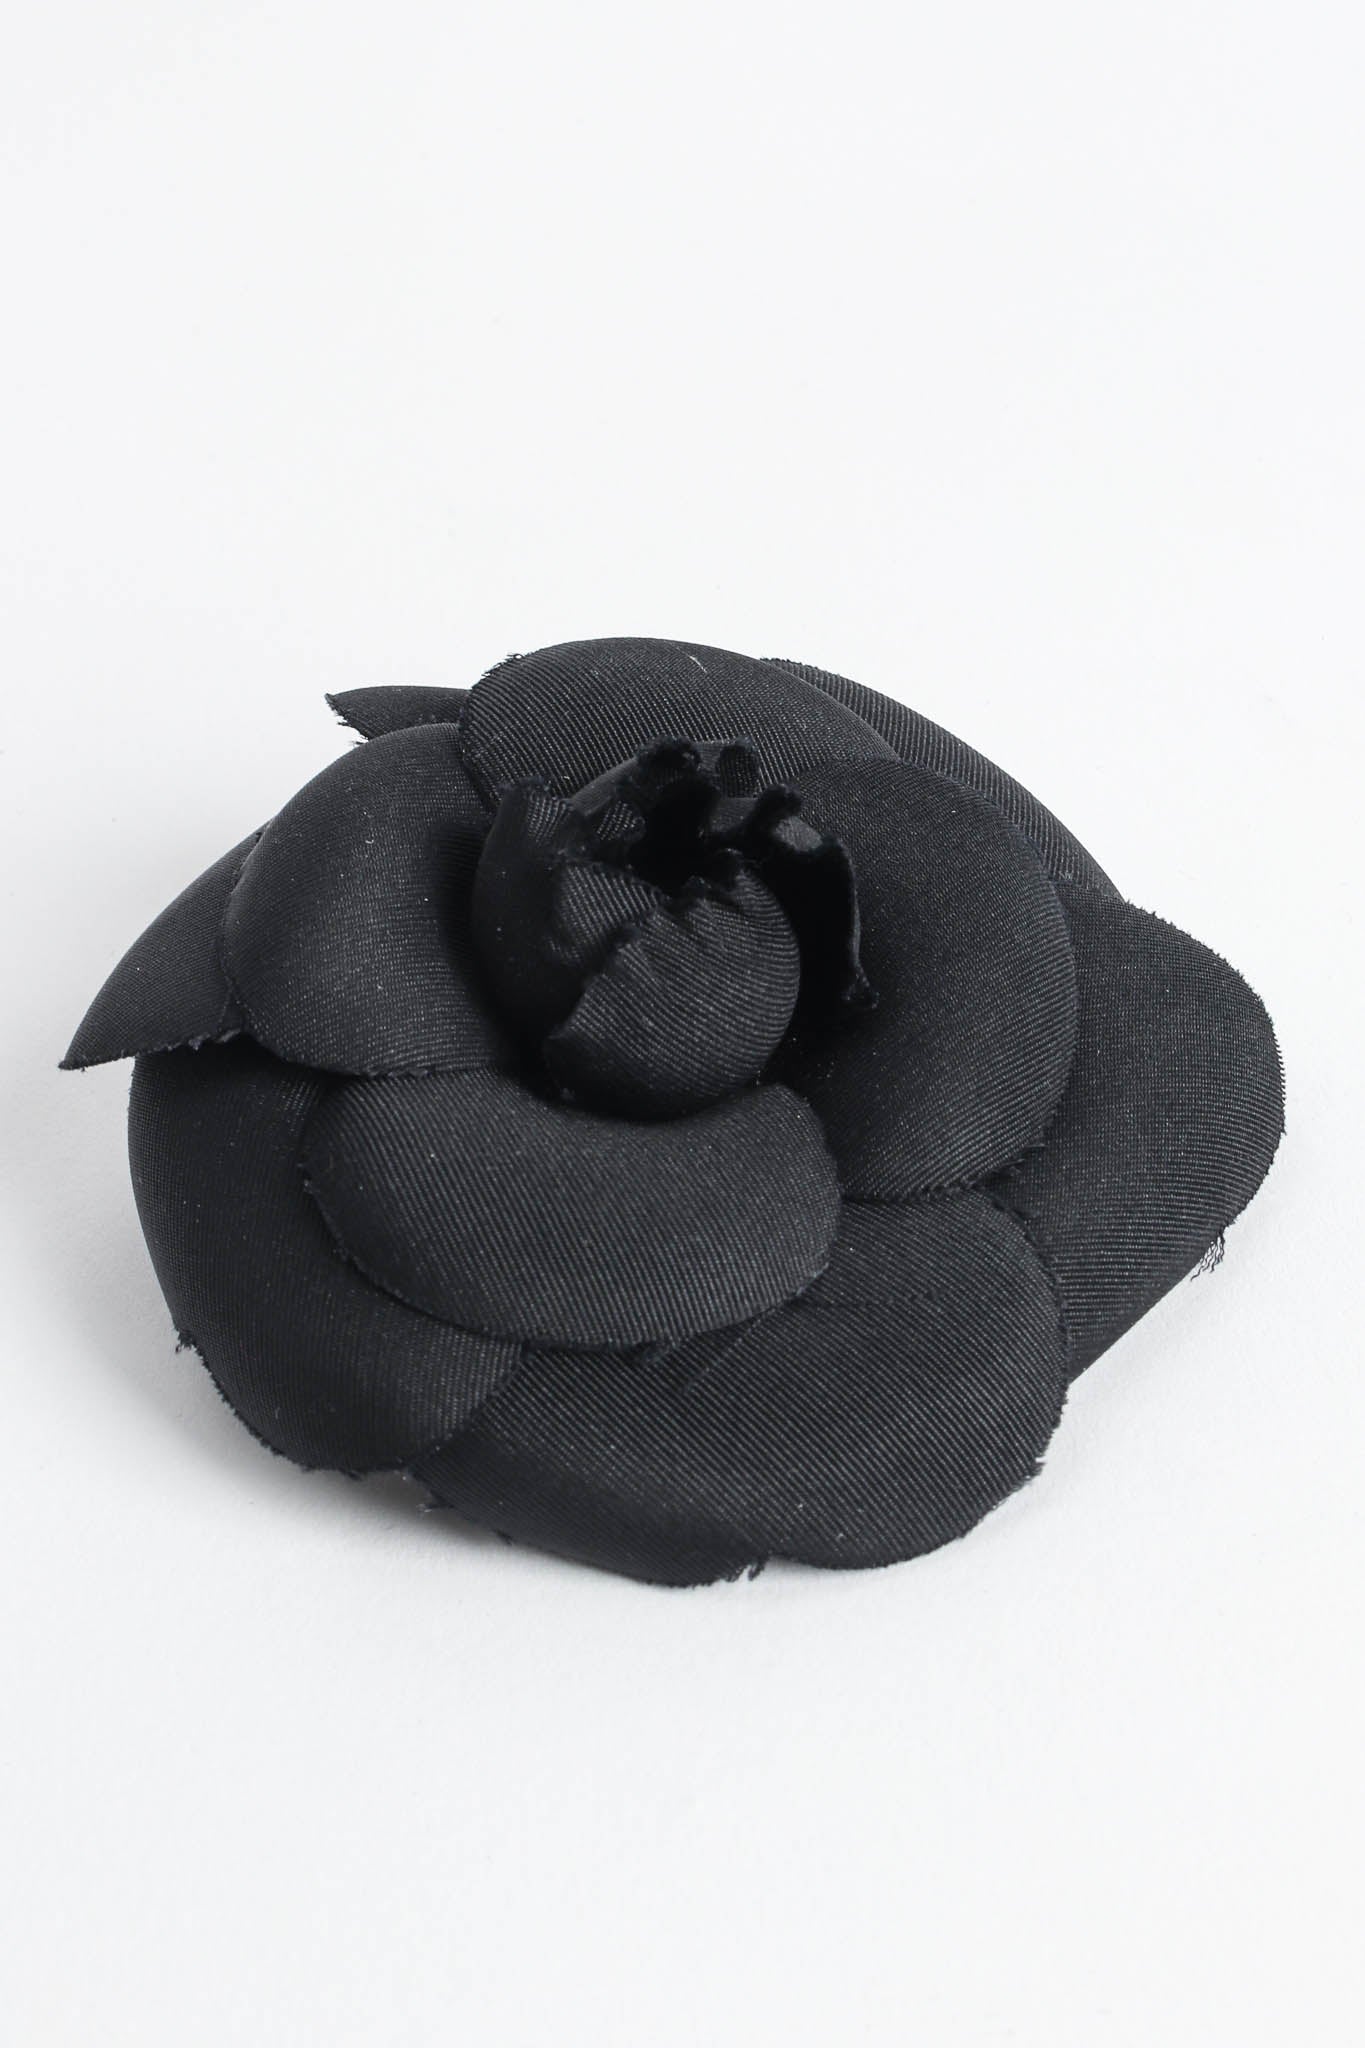 Vintage Chanel Black Camellia Flower Pin I